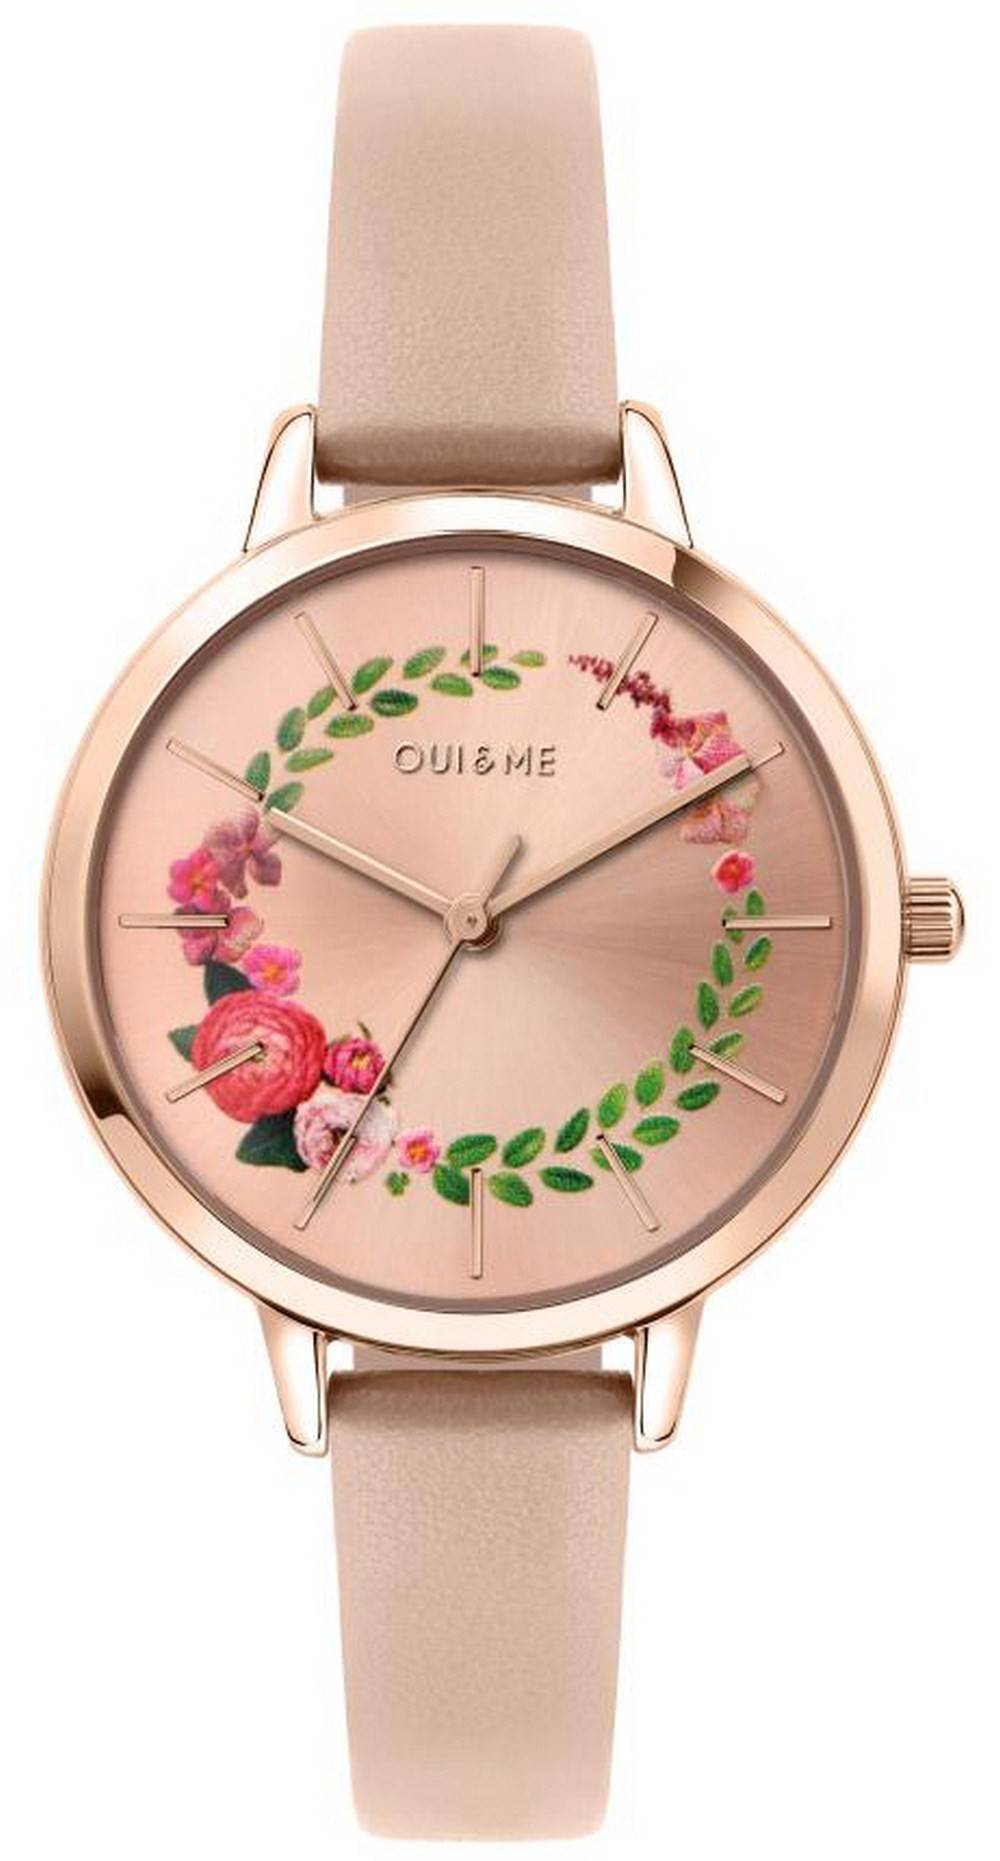 Oui & Me Fleurette Rose Gold Sunray Dial Leather Strap Quartz ME010038 Women's Watch